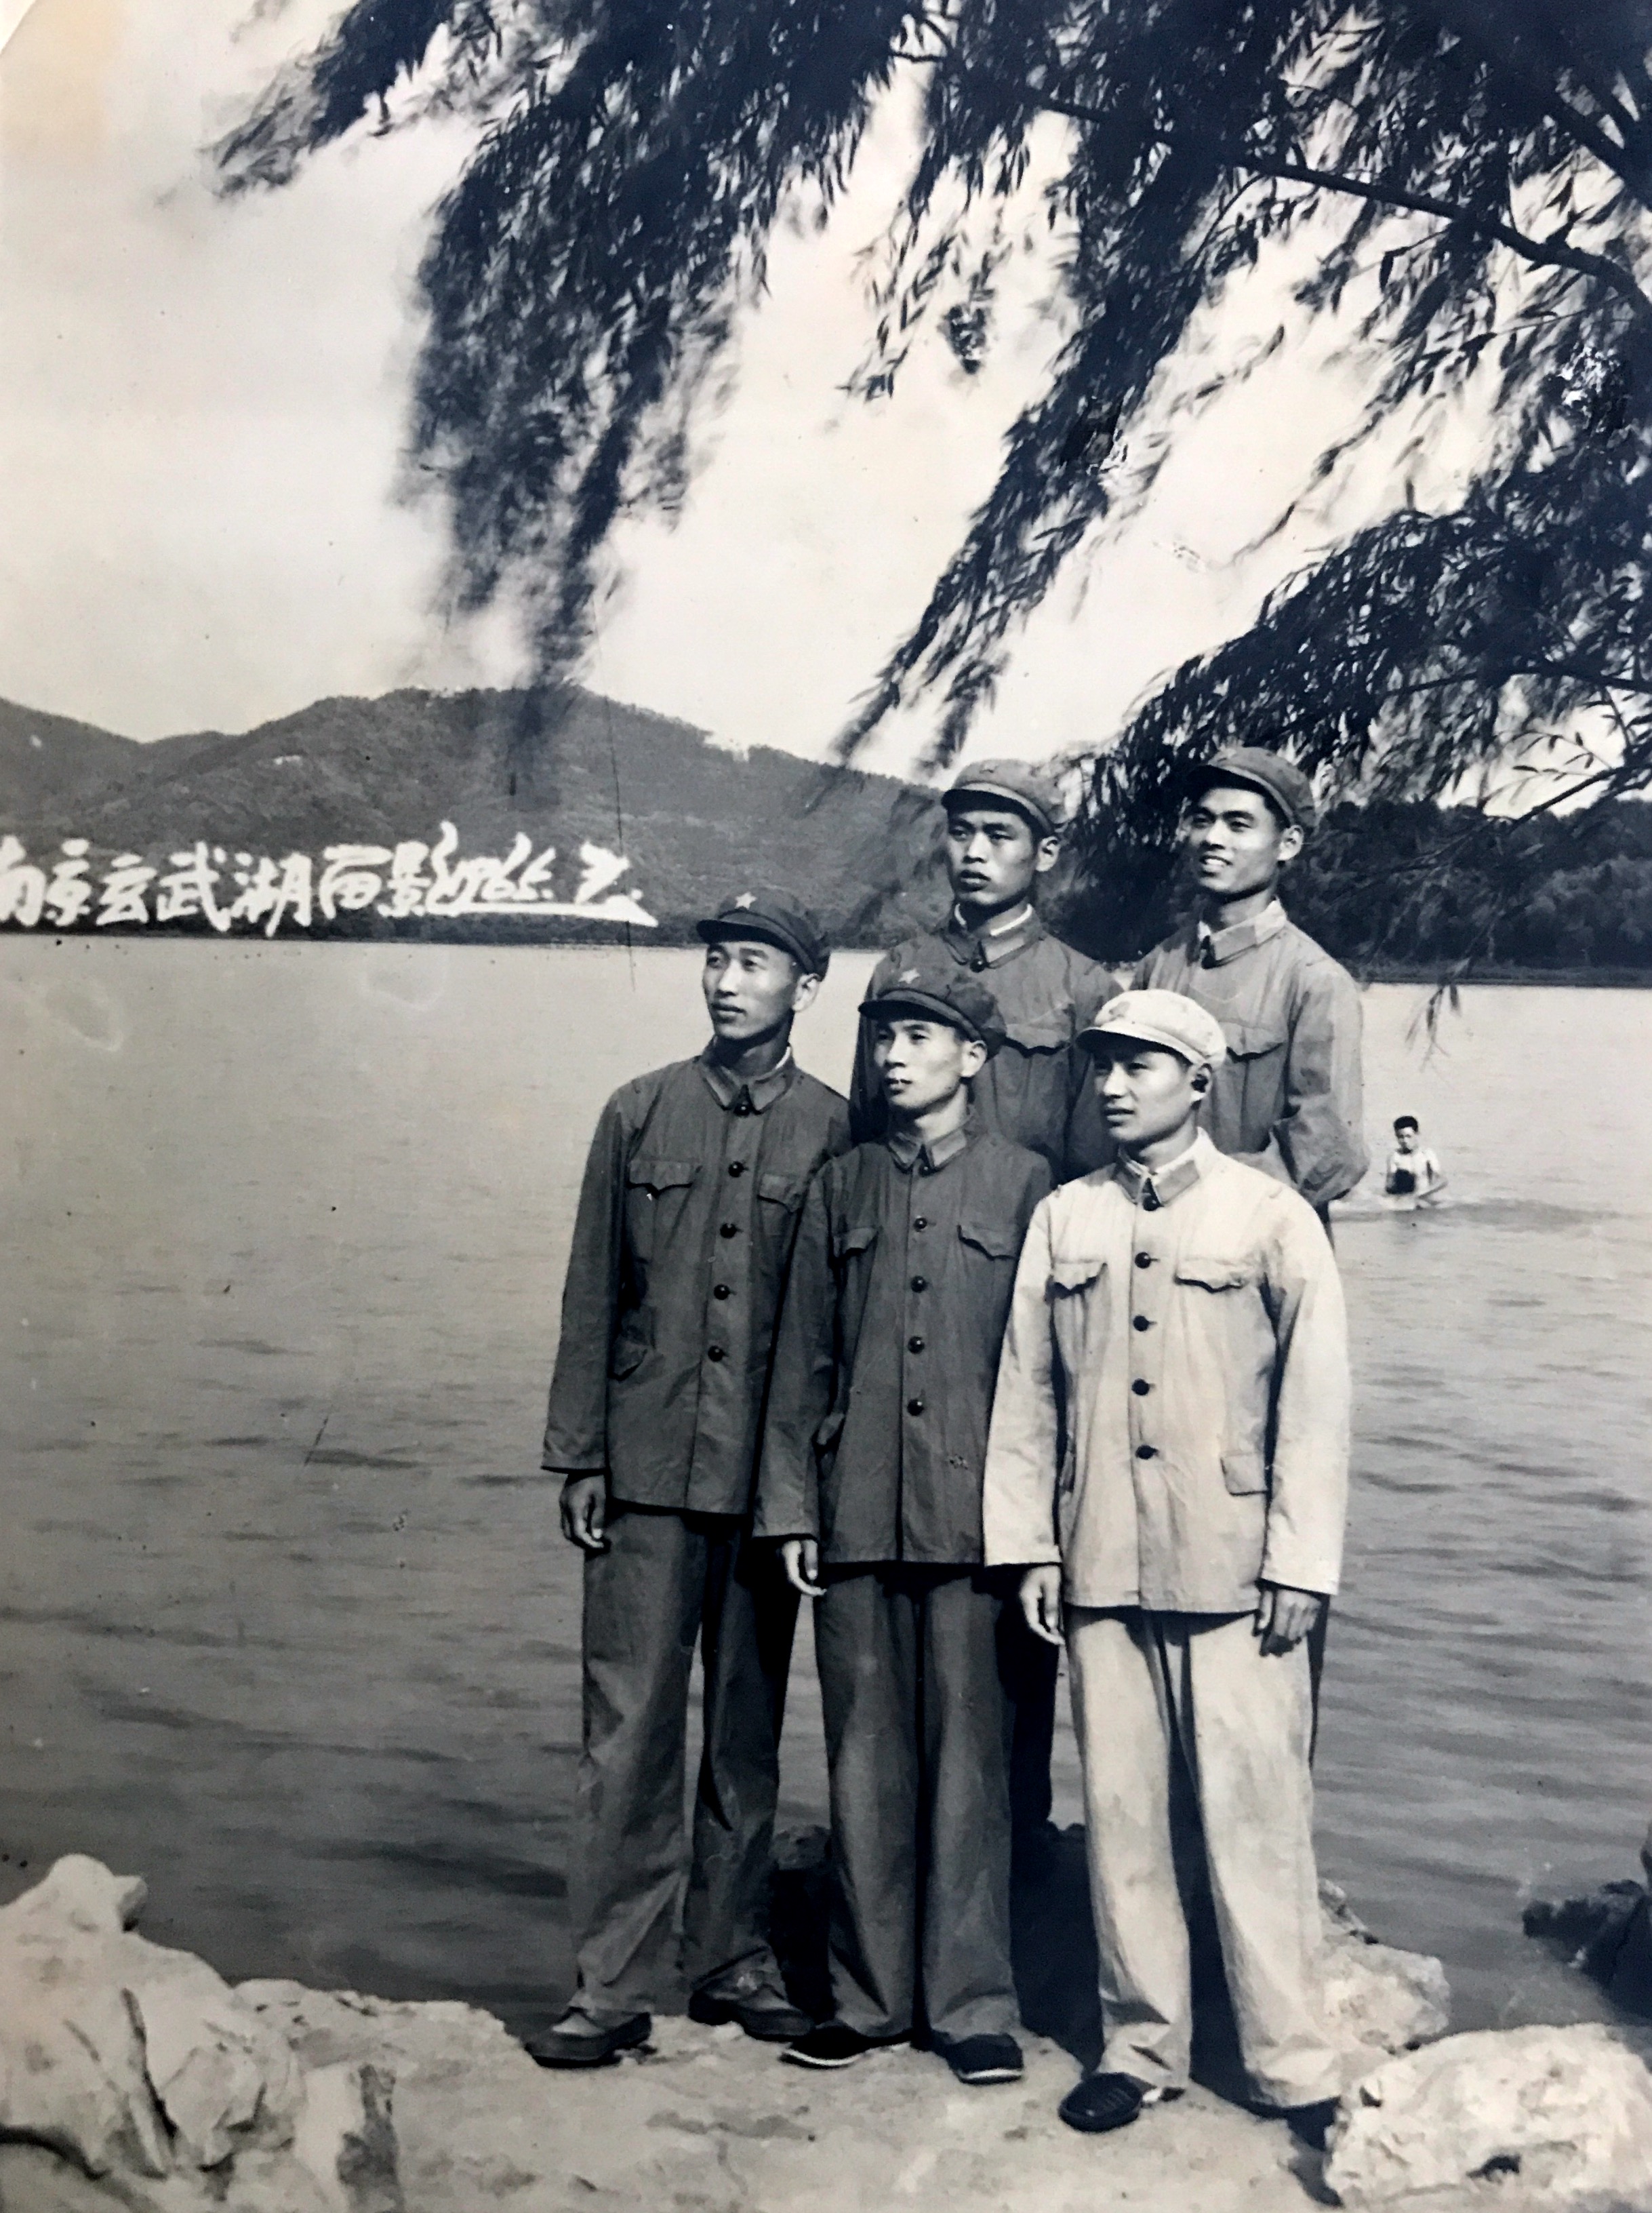 1964年7月，南京军区步兵学校机要队毕业后同时分配到军区司令部机要局译电科的五个战友，1965年7月在玄武湖公园合影留念。前排左一于建新，左二胡行根，右一禇廷美，后排左一张汉斌，右一黄祖耀。